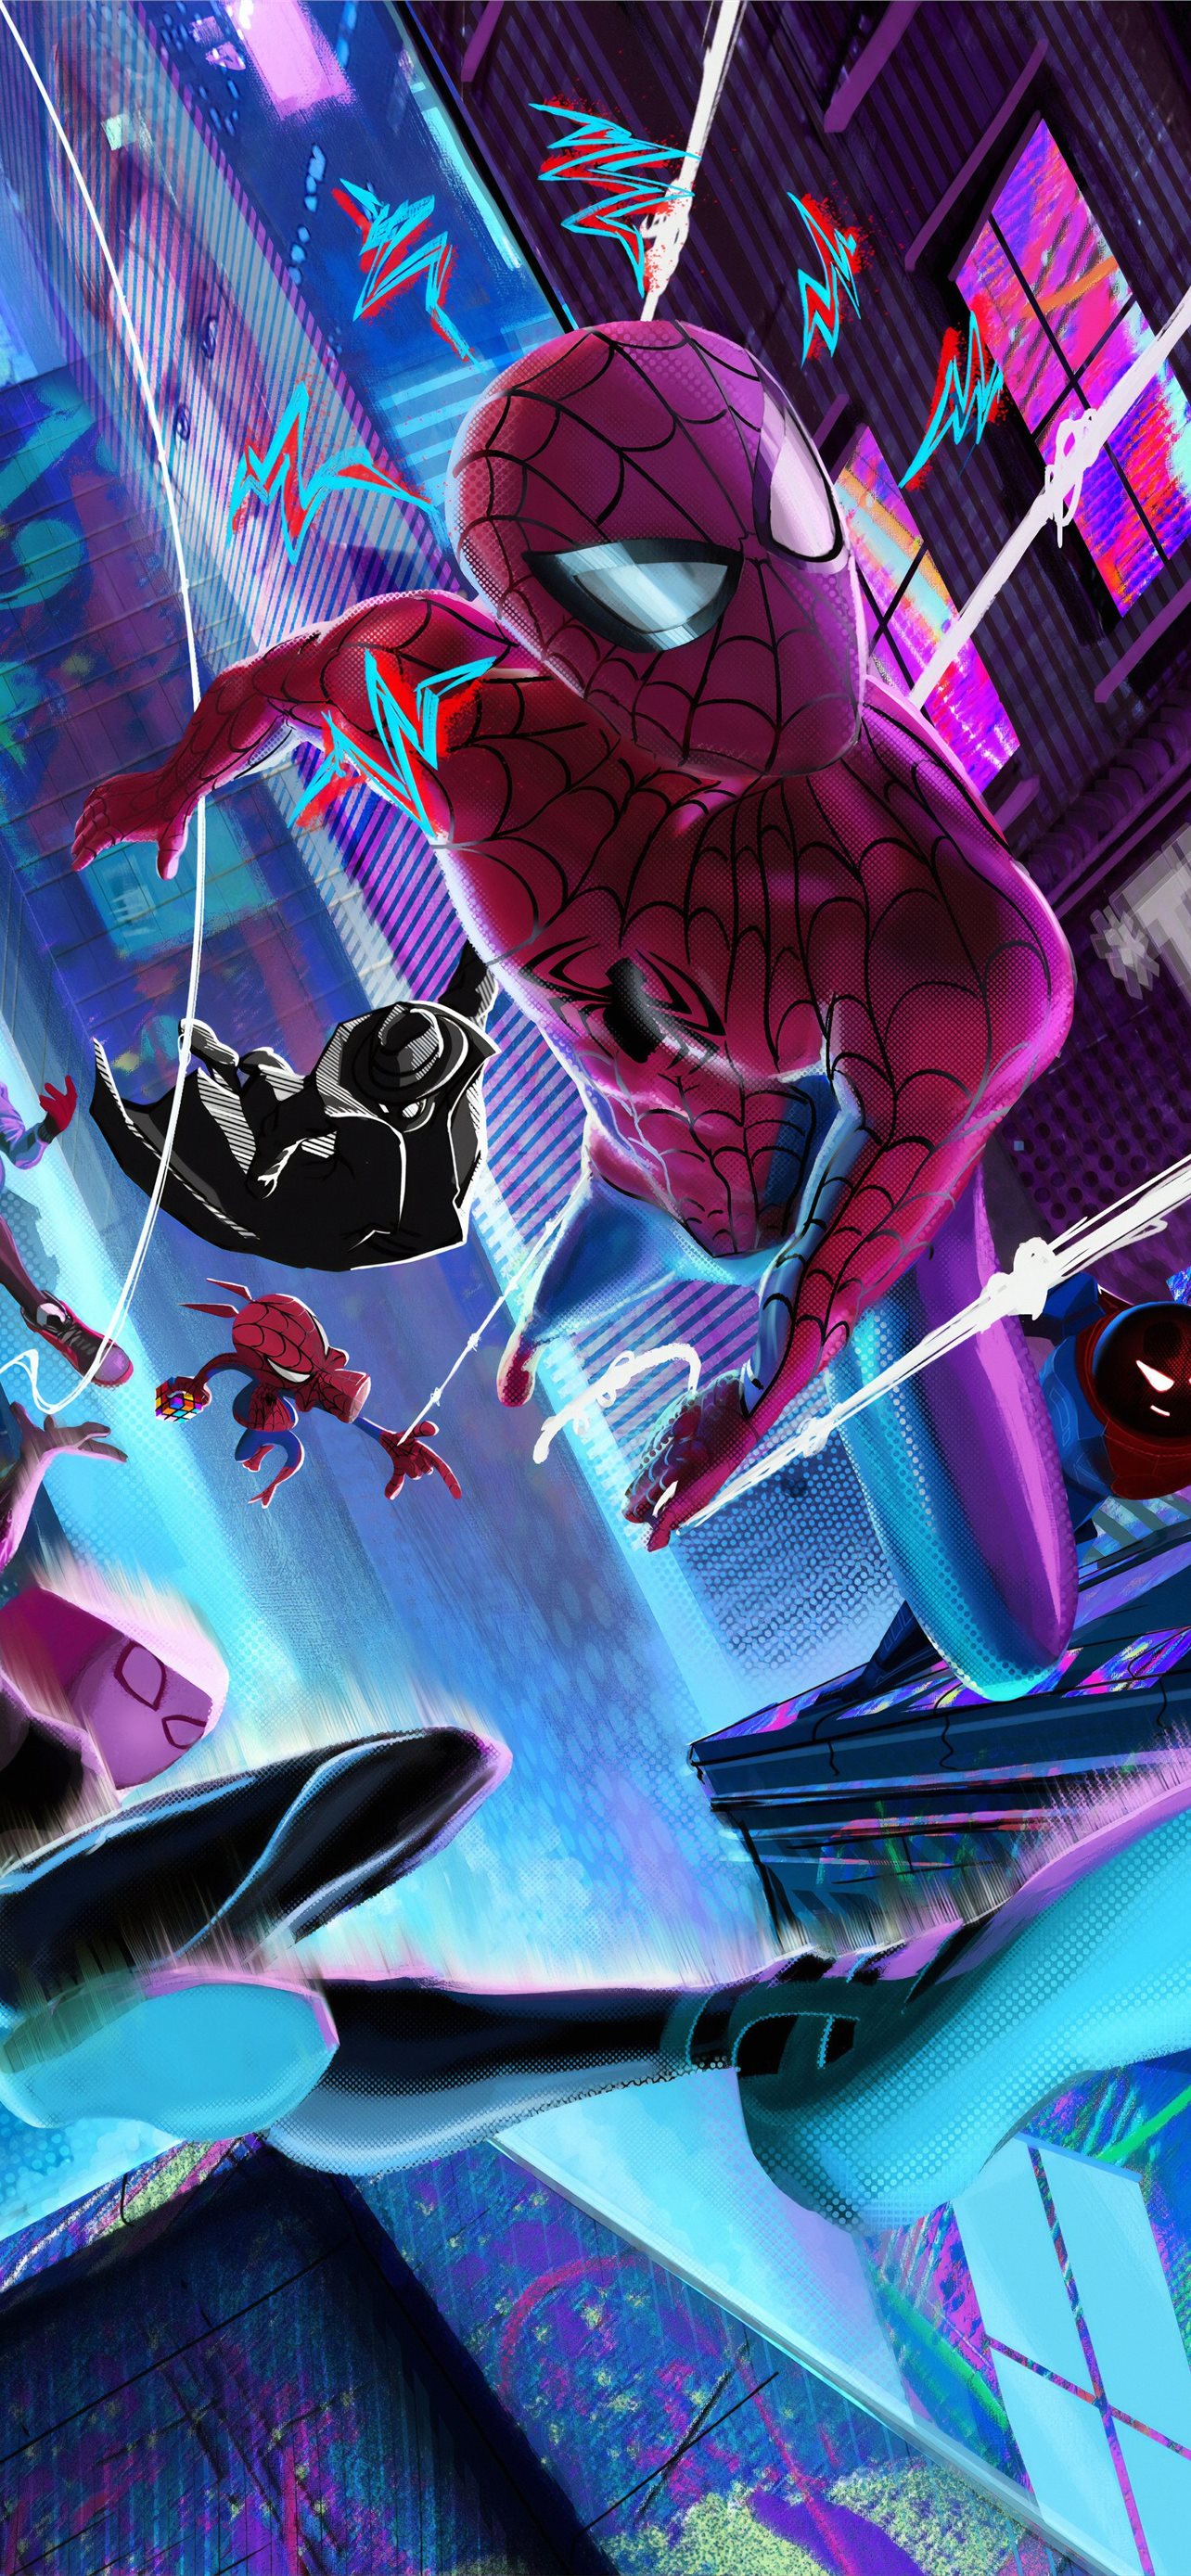 SpiderMan No Way Home Wallpaper 4K Marvel Comics 7735